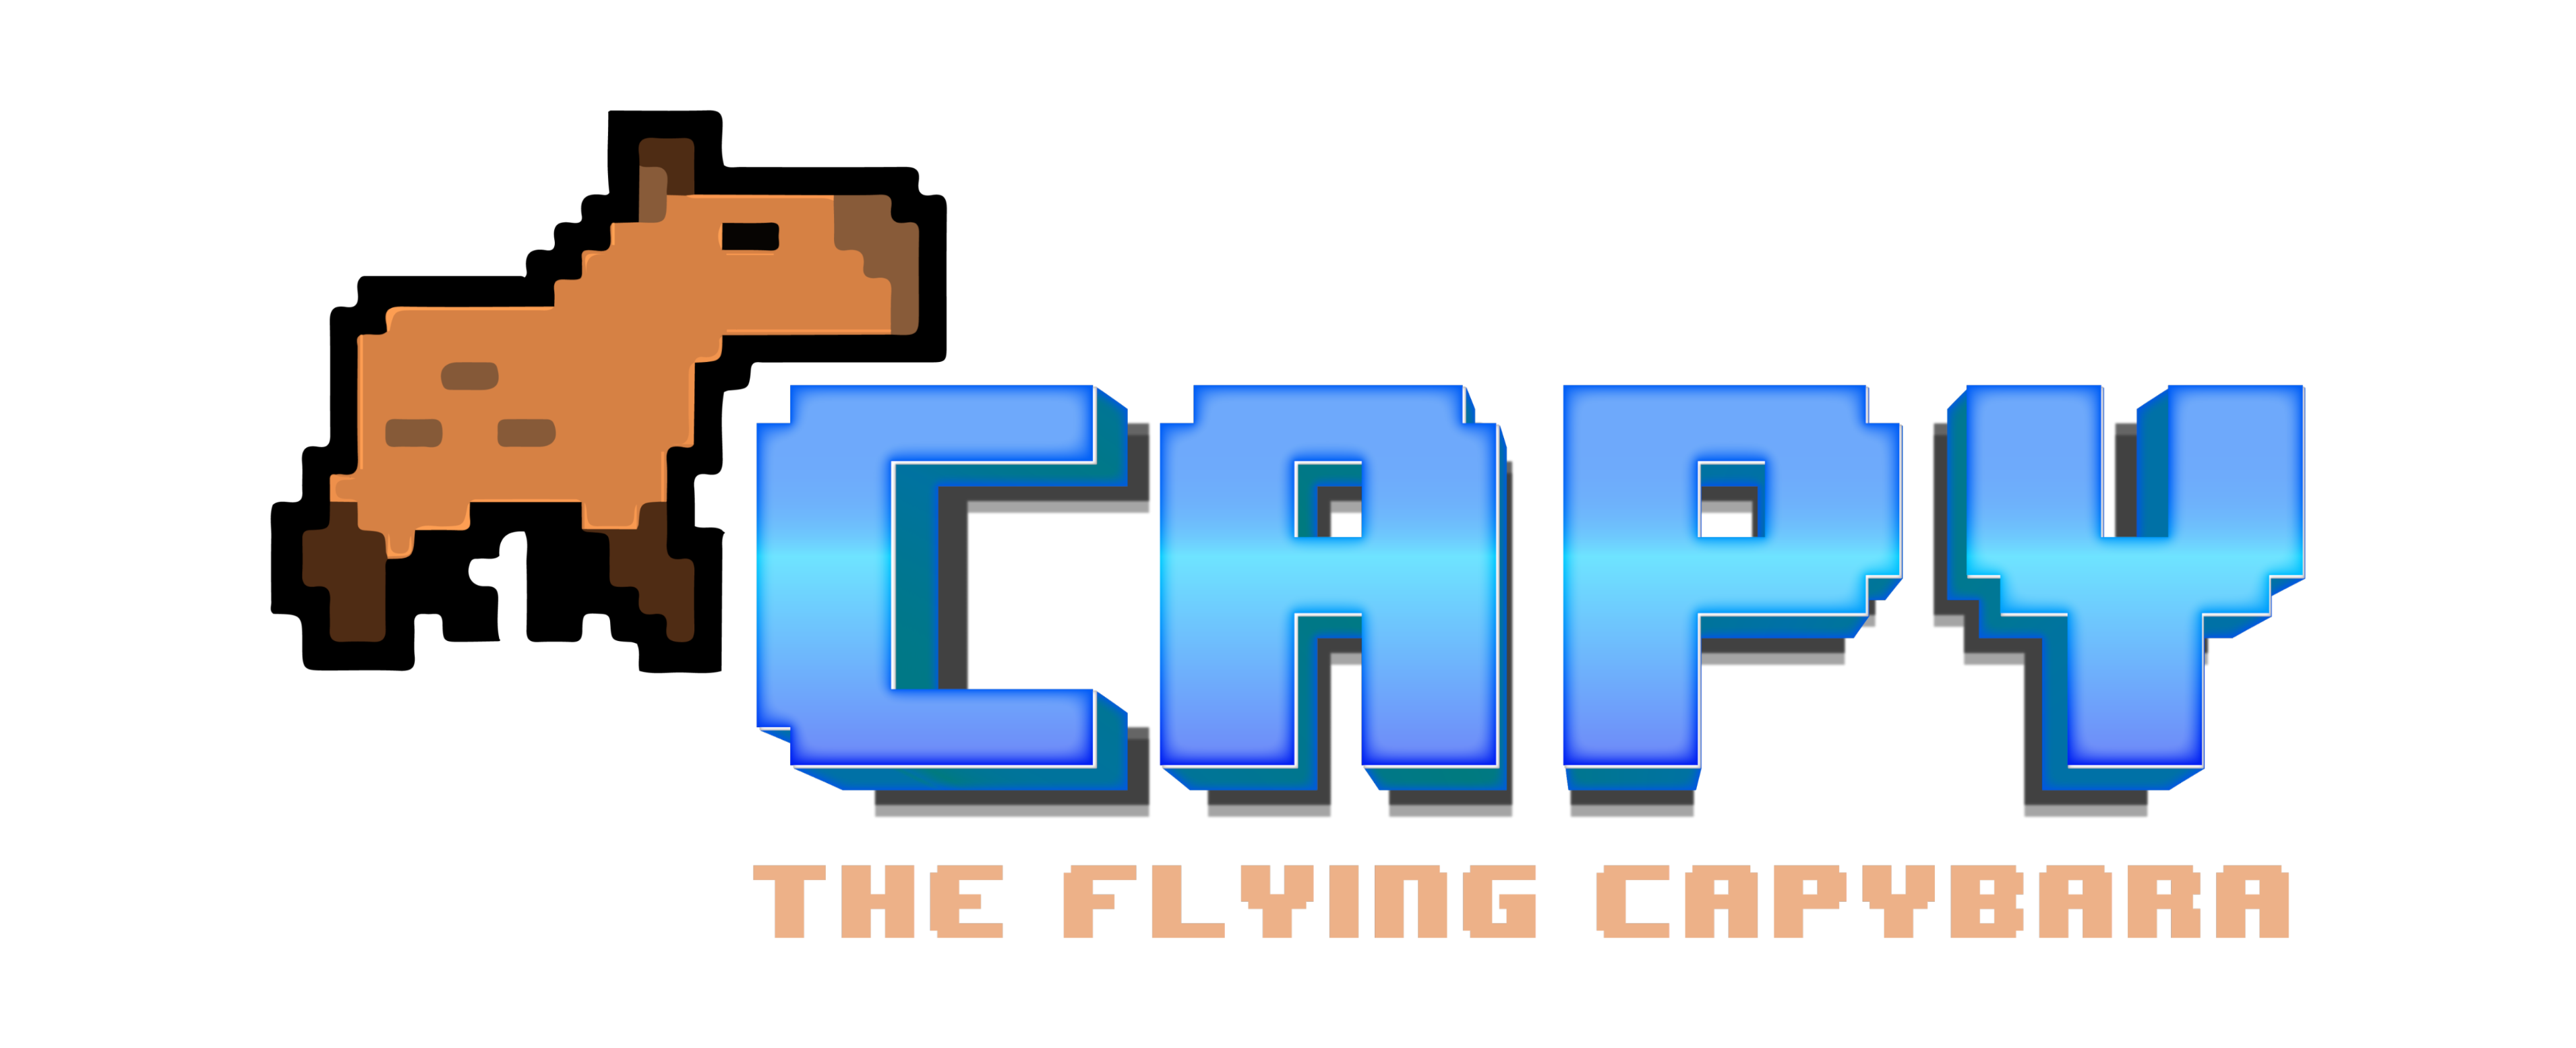 Capy! The Flying Capybara!